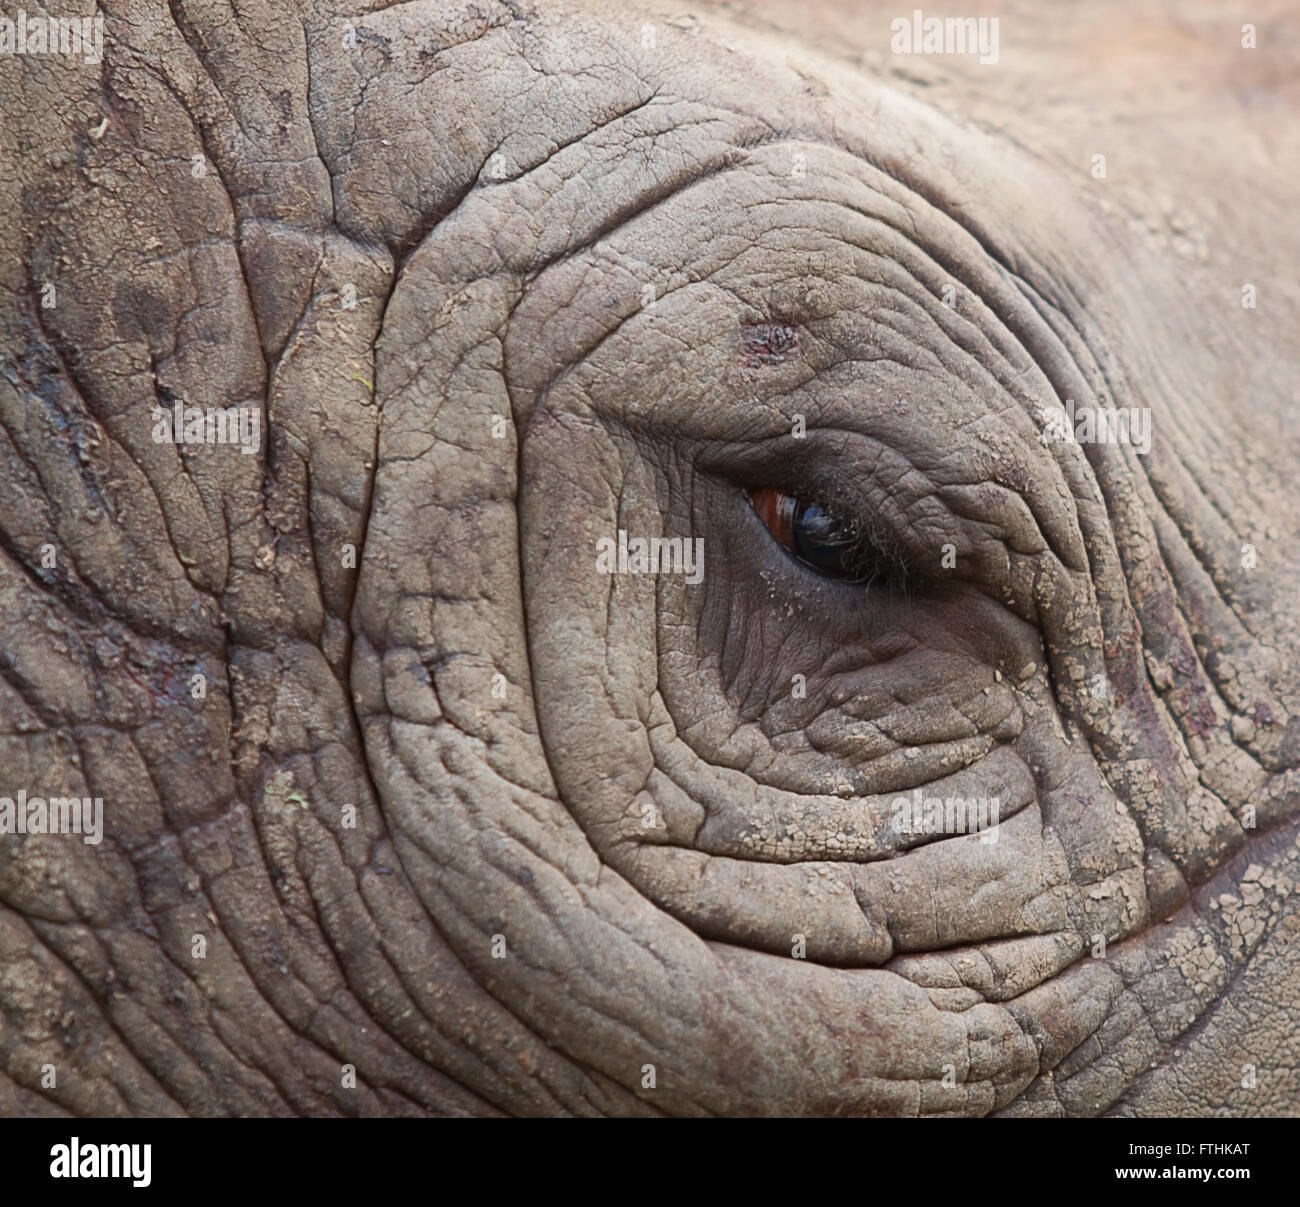 Estudio fotográfico de un ojo del rinoceronte negro Foto de stock